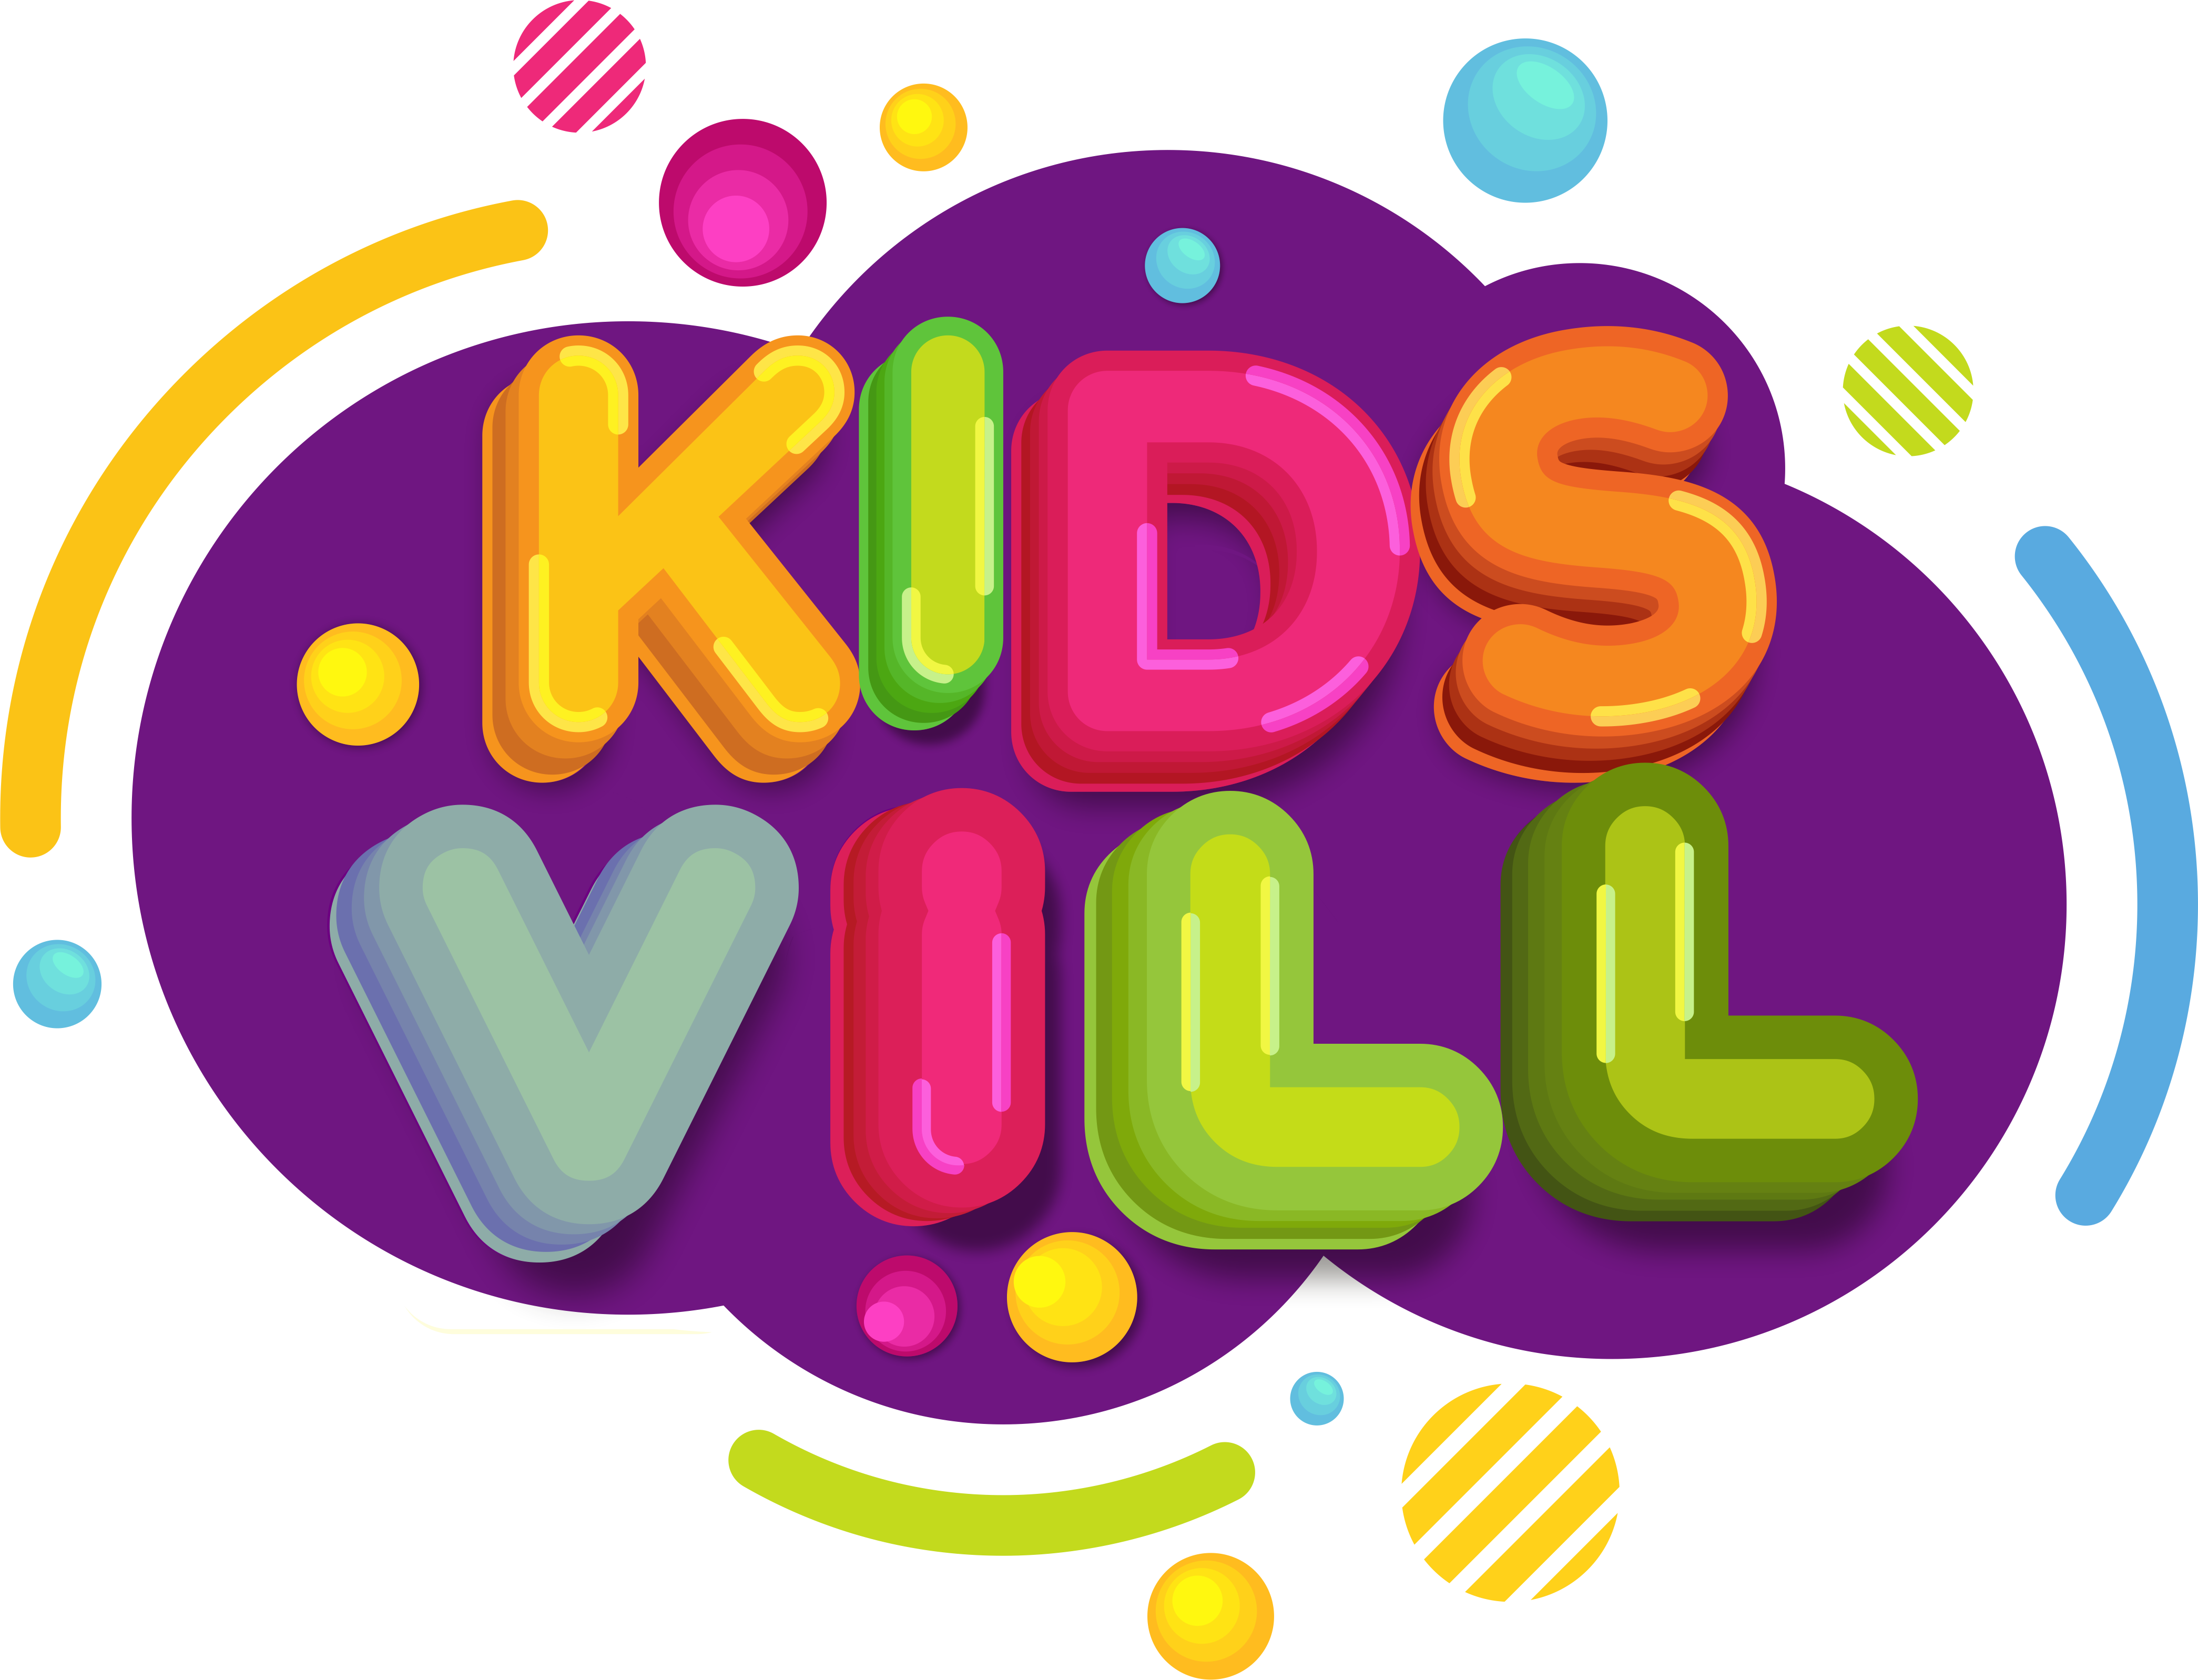 «КидсВилл» – интернет-магазин детских товаров